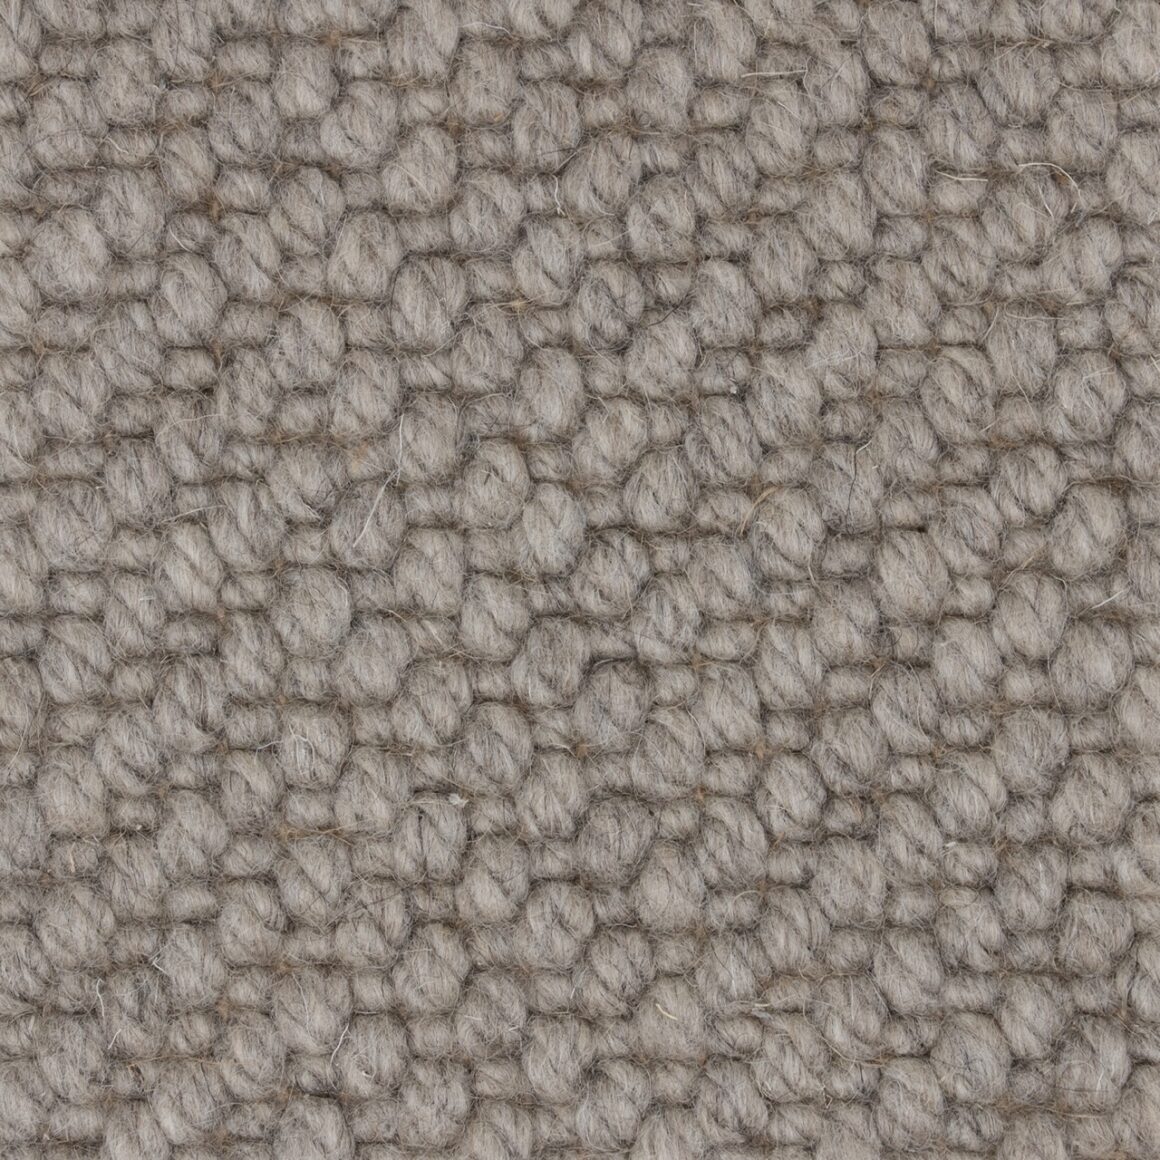 wool rug in neutral color